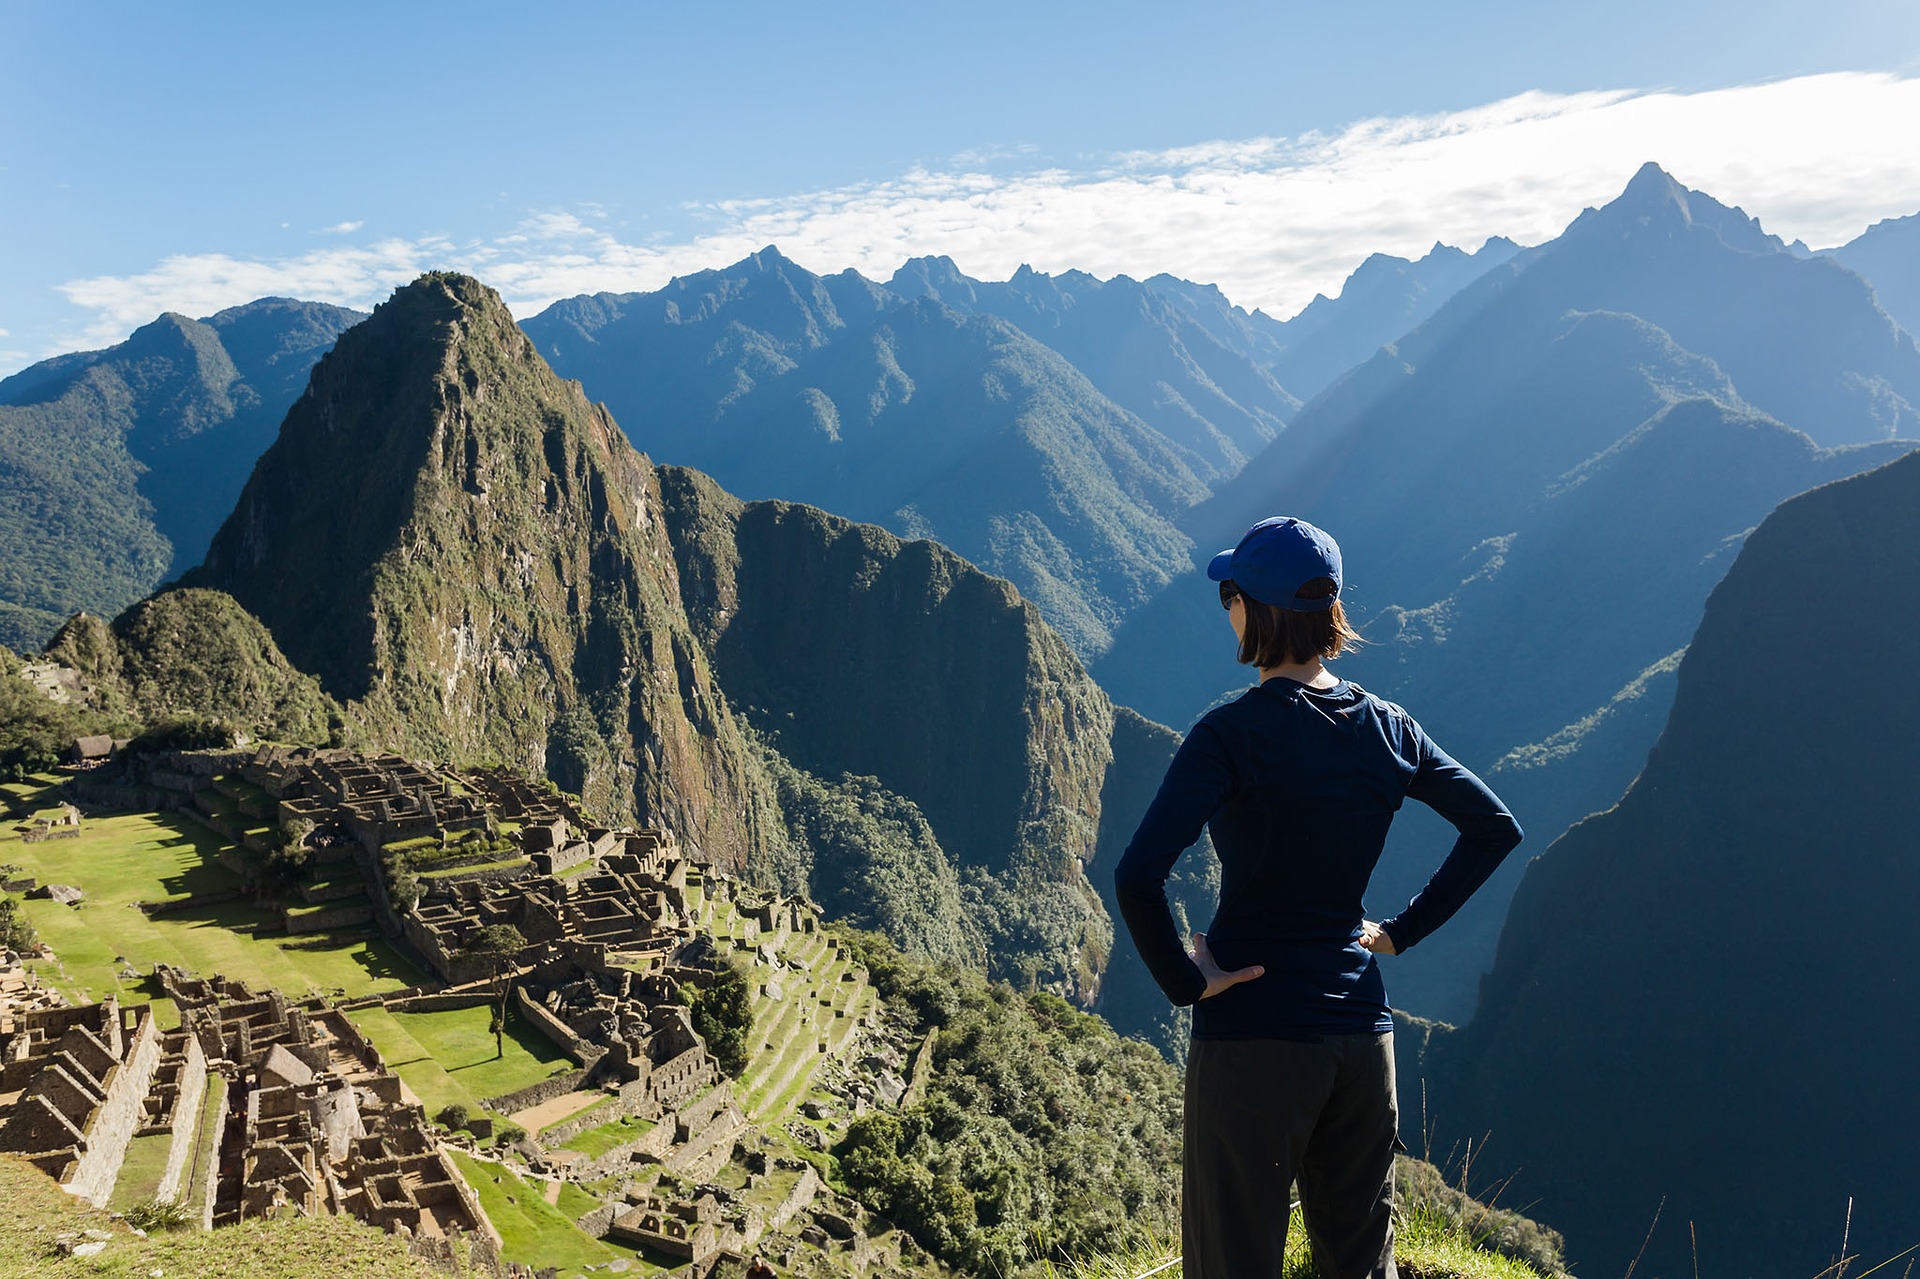 Hemos estado todo el tiempo llamando por otro nombre a la famosa ciudad inca conocida por Machu Picchu